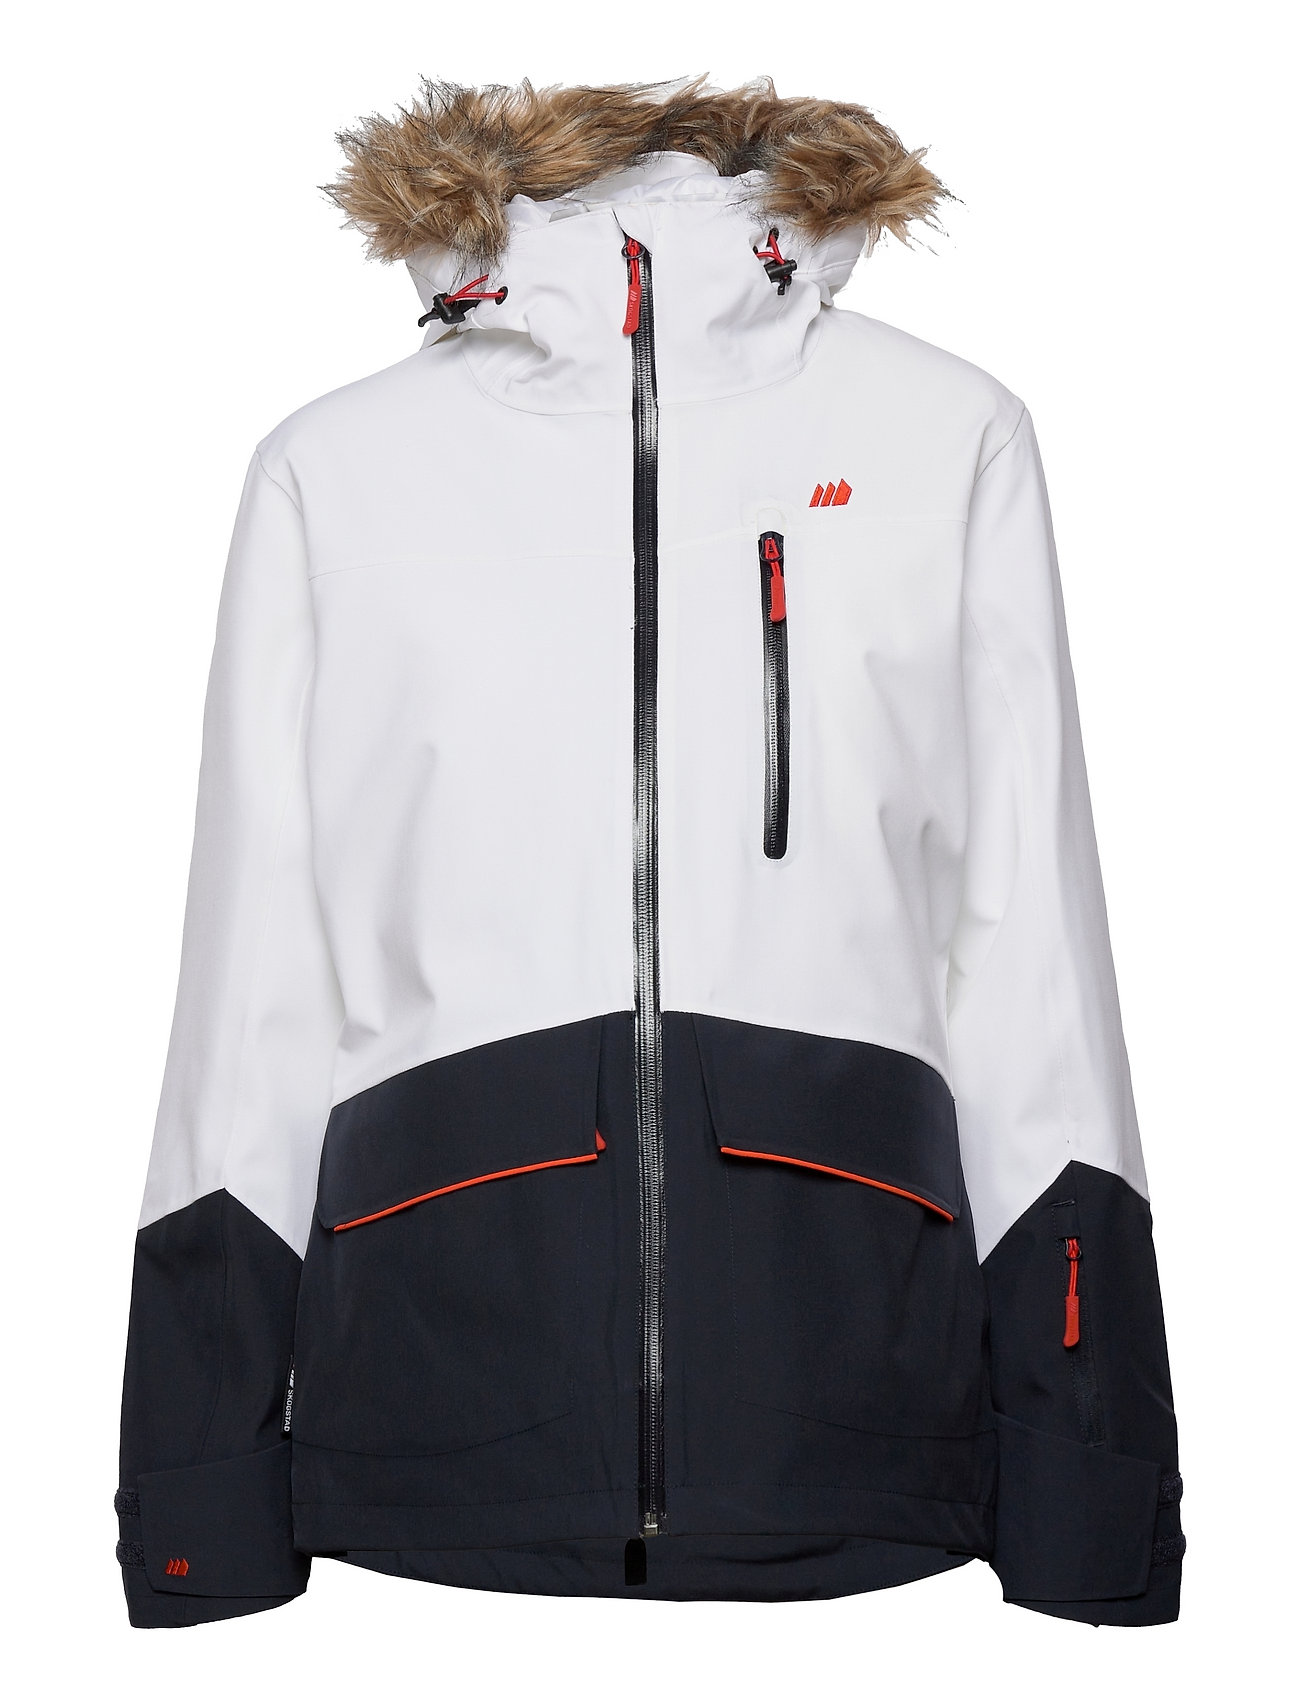 Vassetdalen 2-Layer Technical Jacket Outerwear Sport Jackets Vit Skogstad